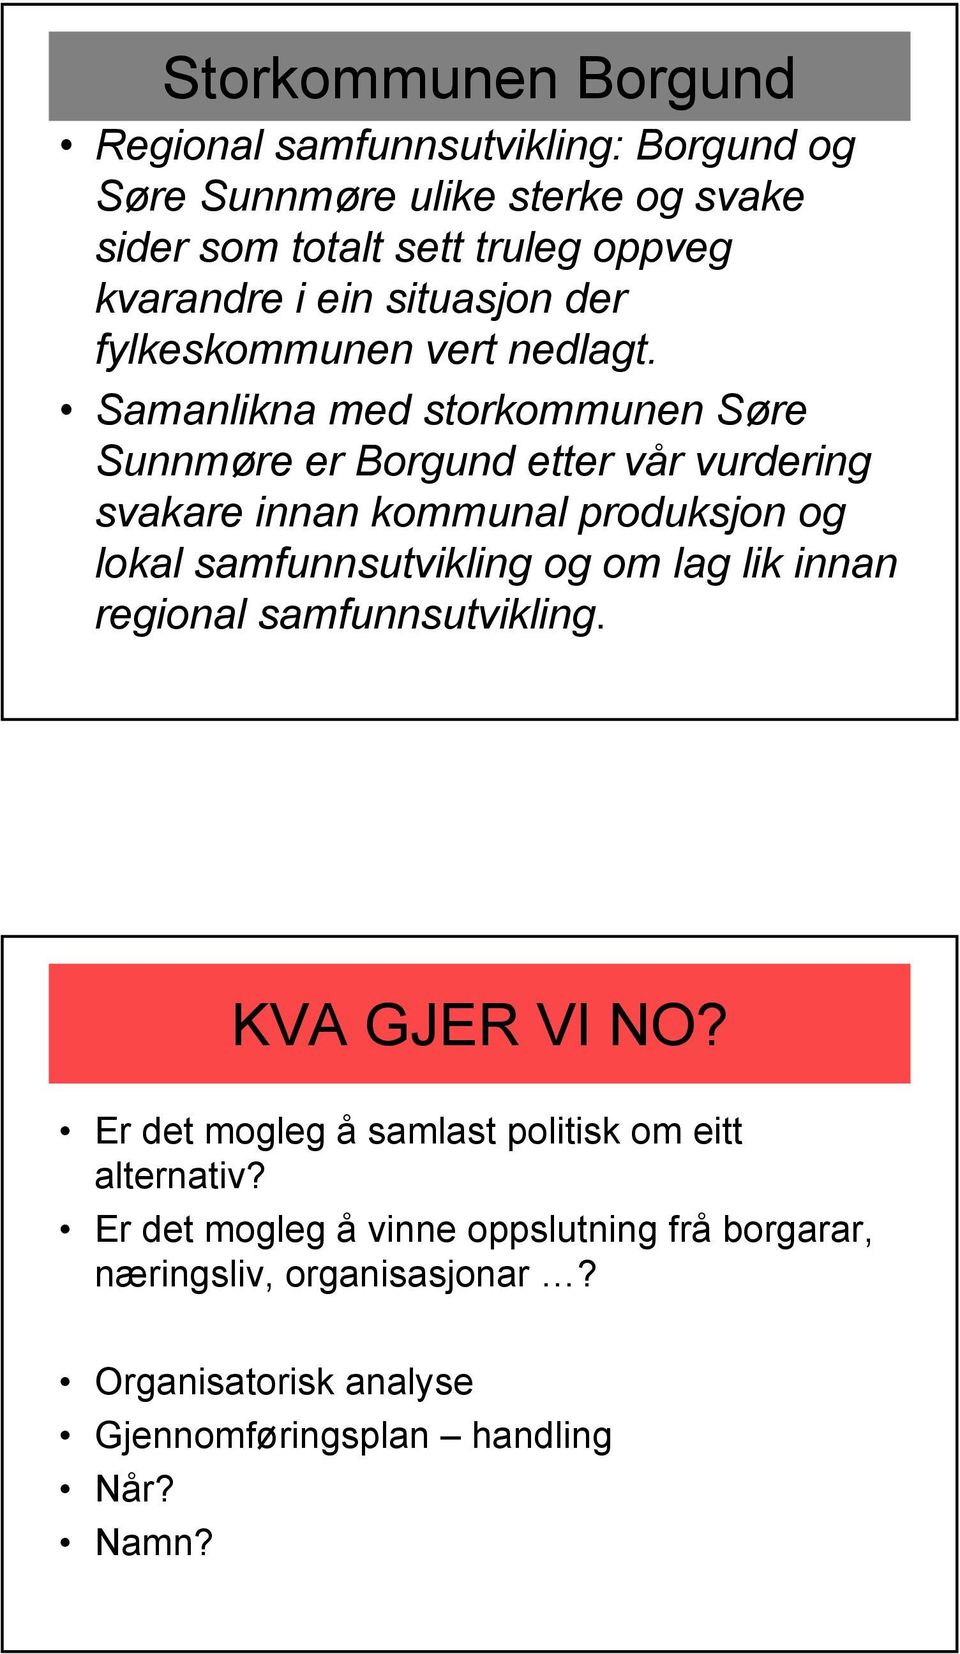 Samanlikna med storkommunen Søre Sunnmøre er Borgund etter vår vurdering svakare innan kommunal produksjon og lokal samfunnsutvikling og om lag